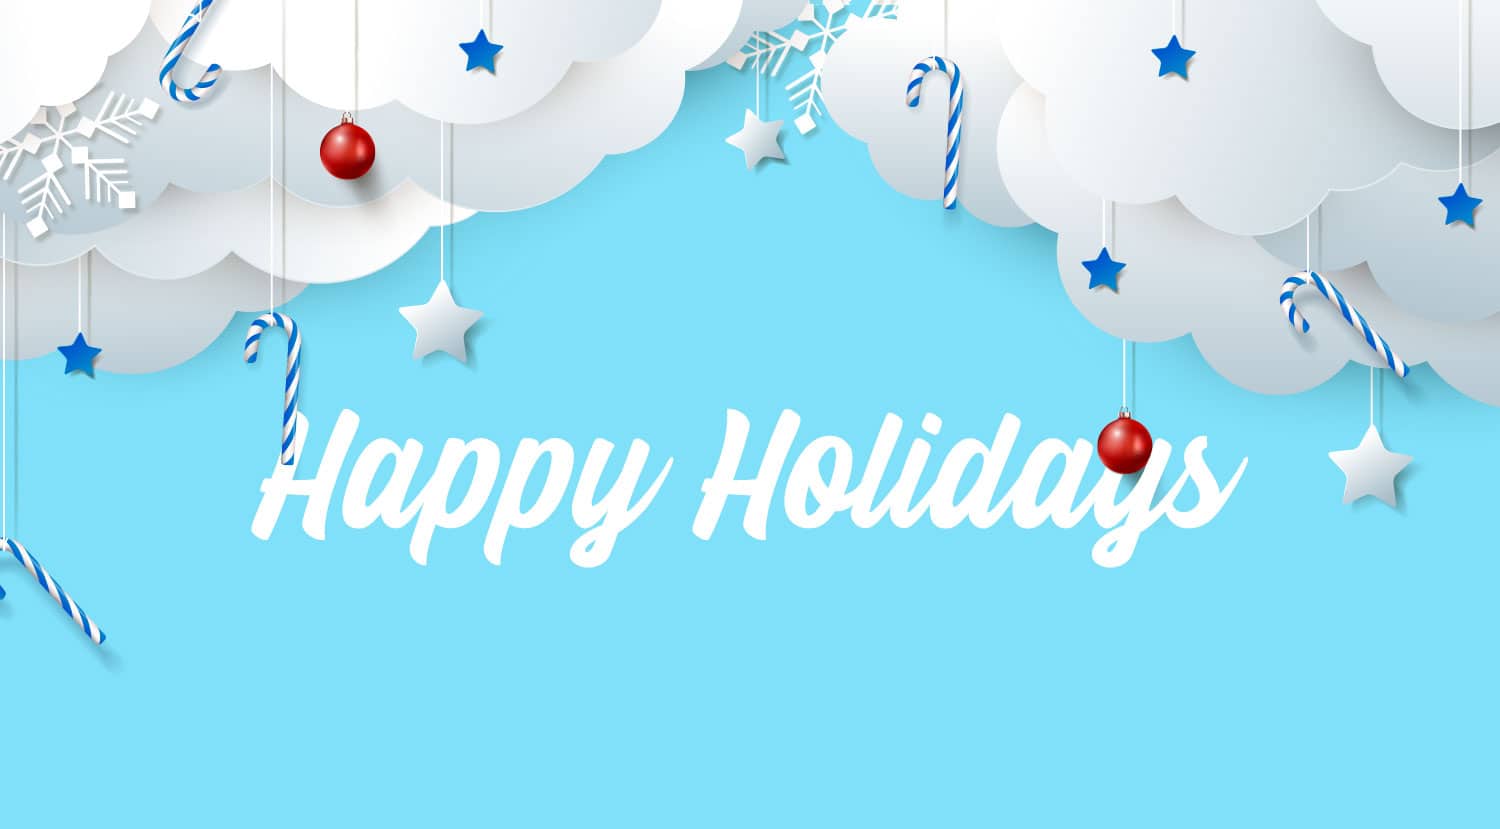 Happy Holidays – I Have a Wish